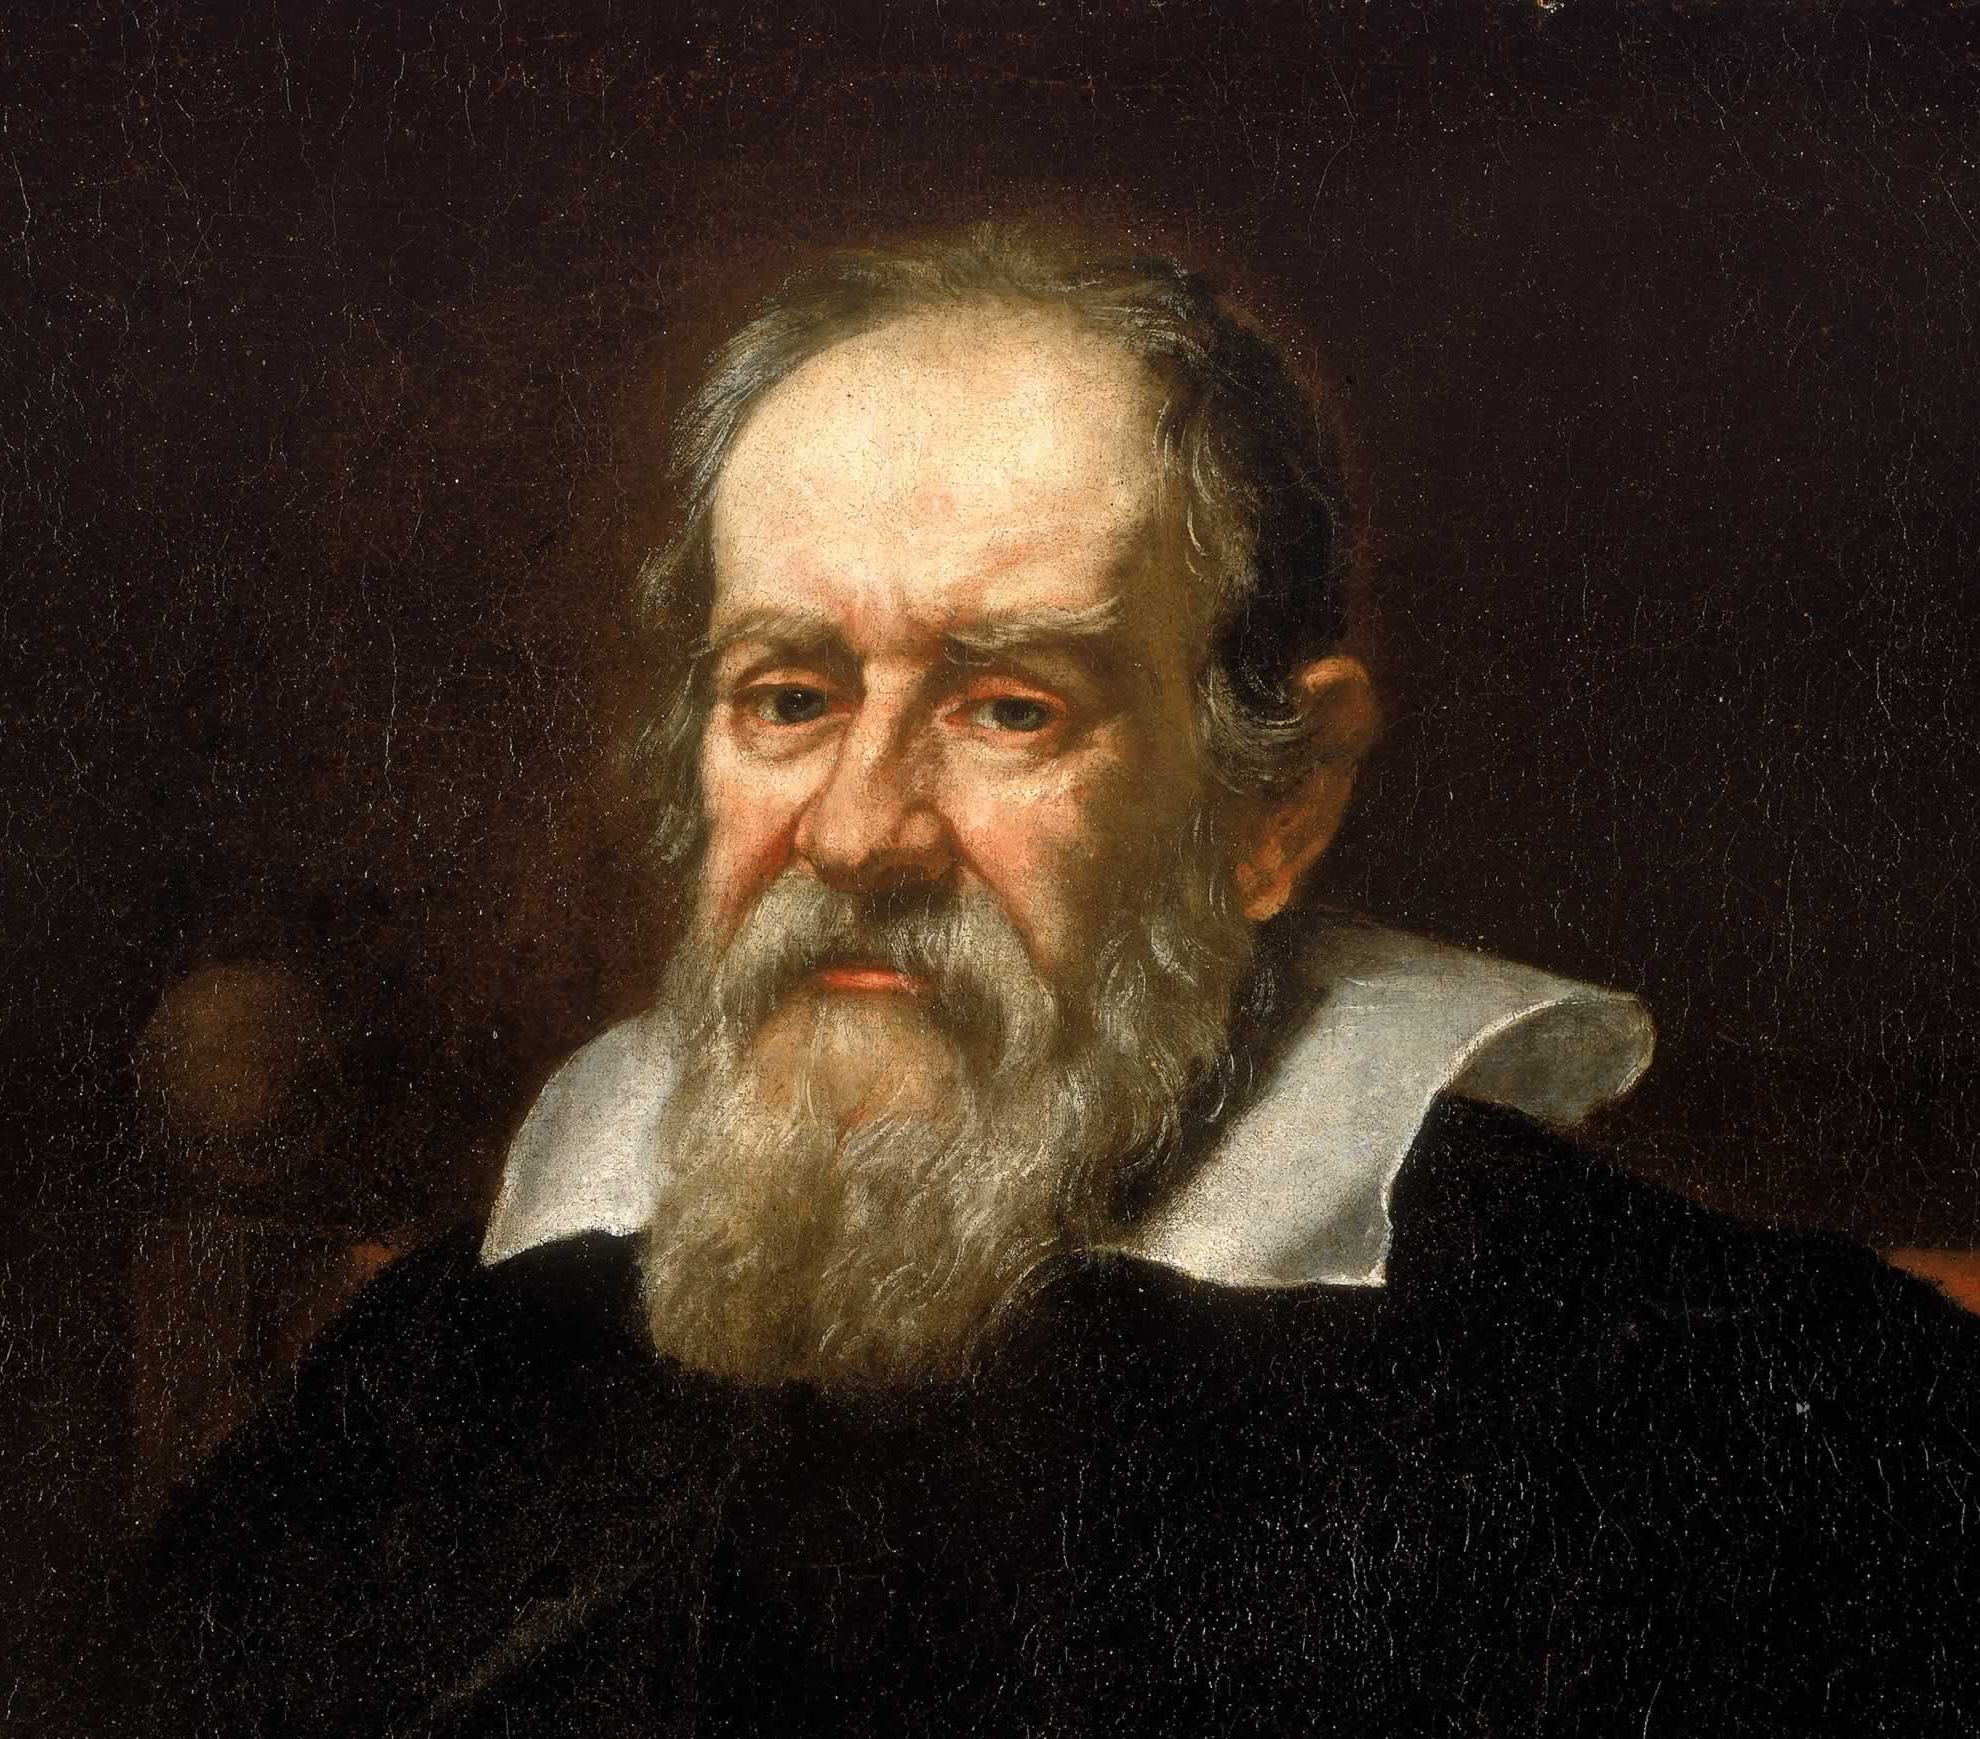 Galileo-Galilei-z3_wp9_4911.jpg